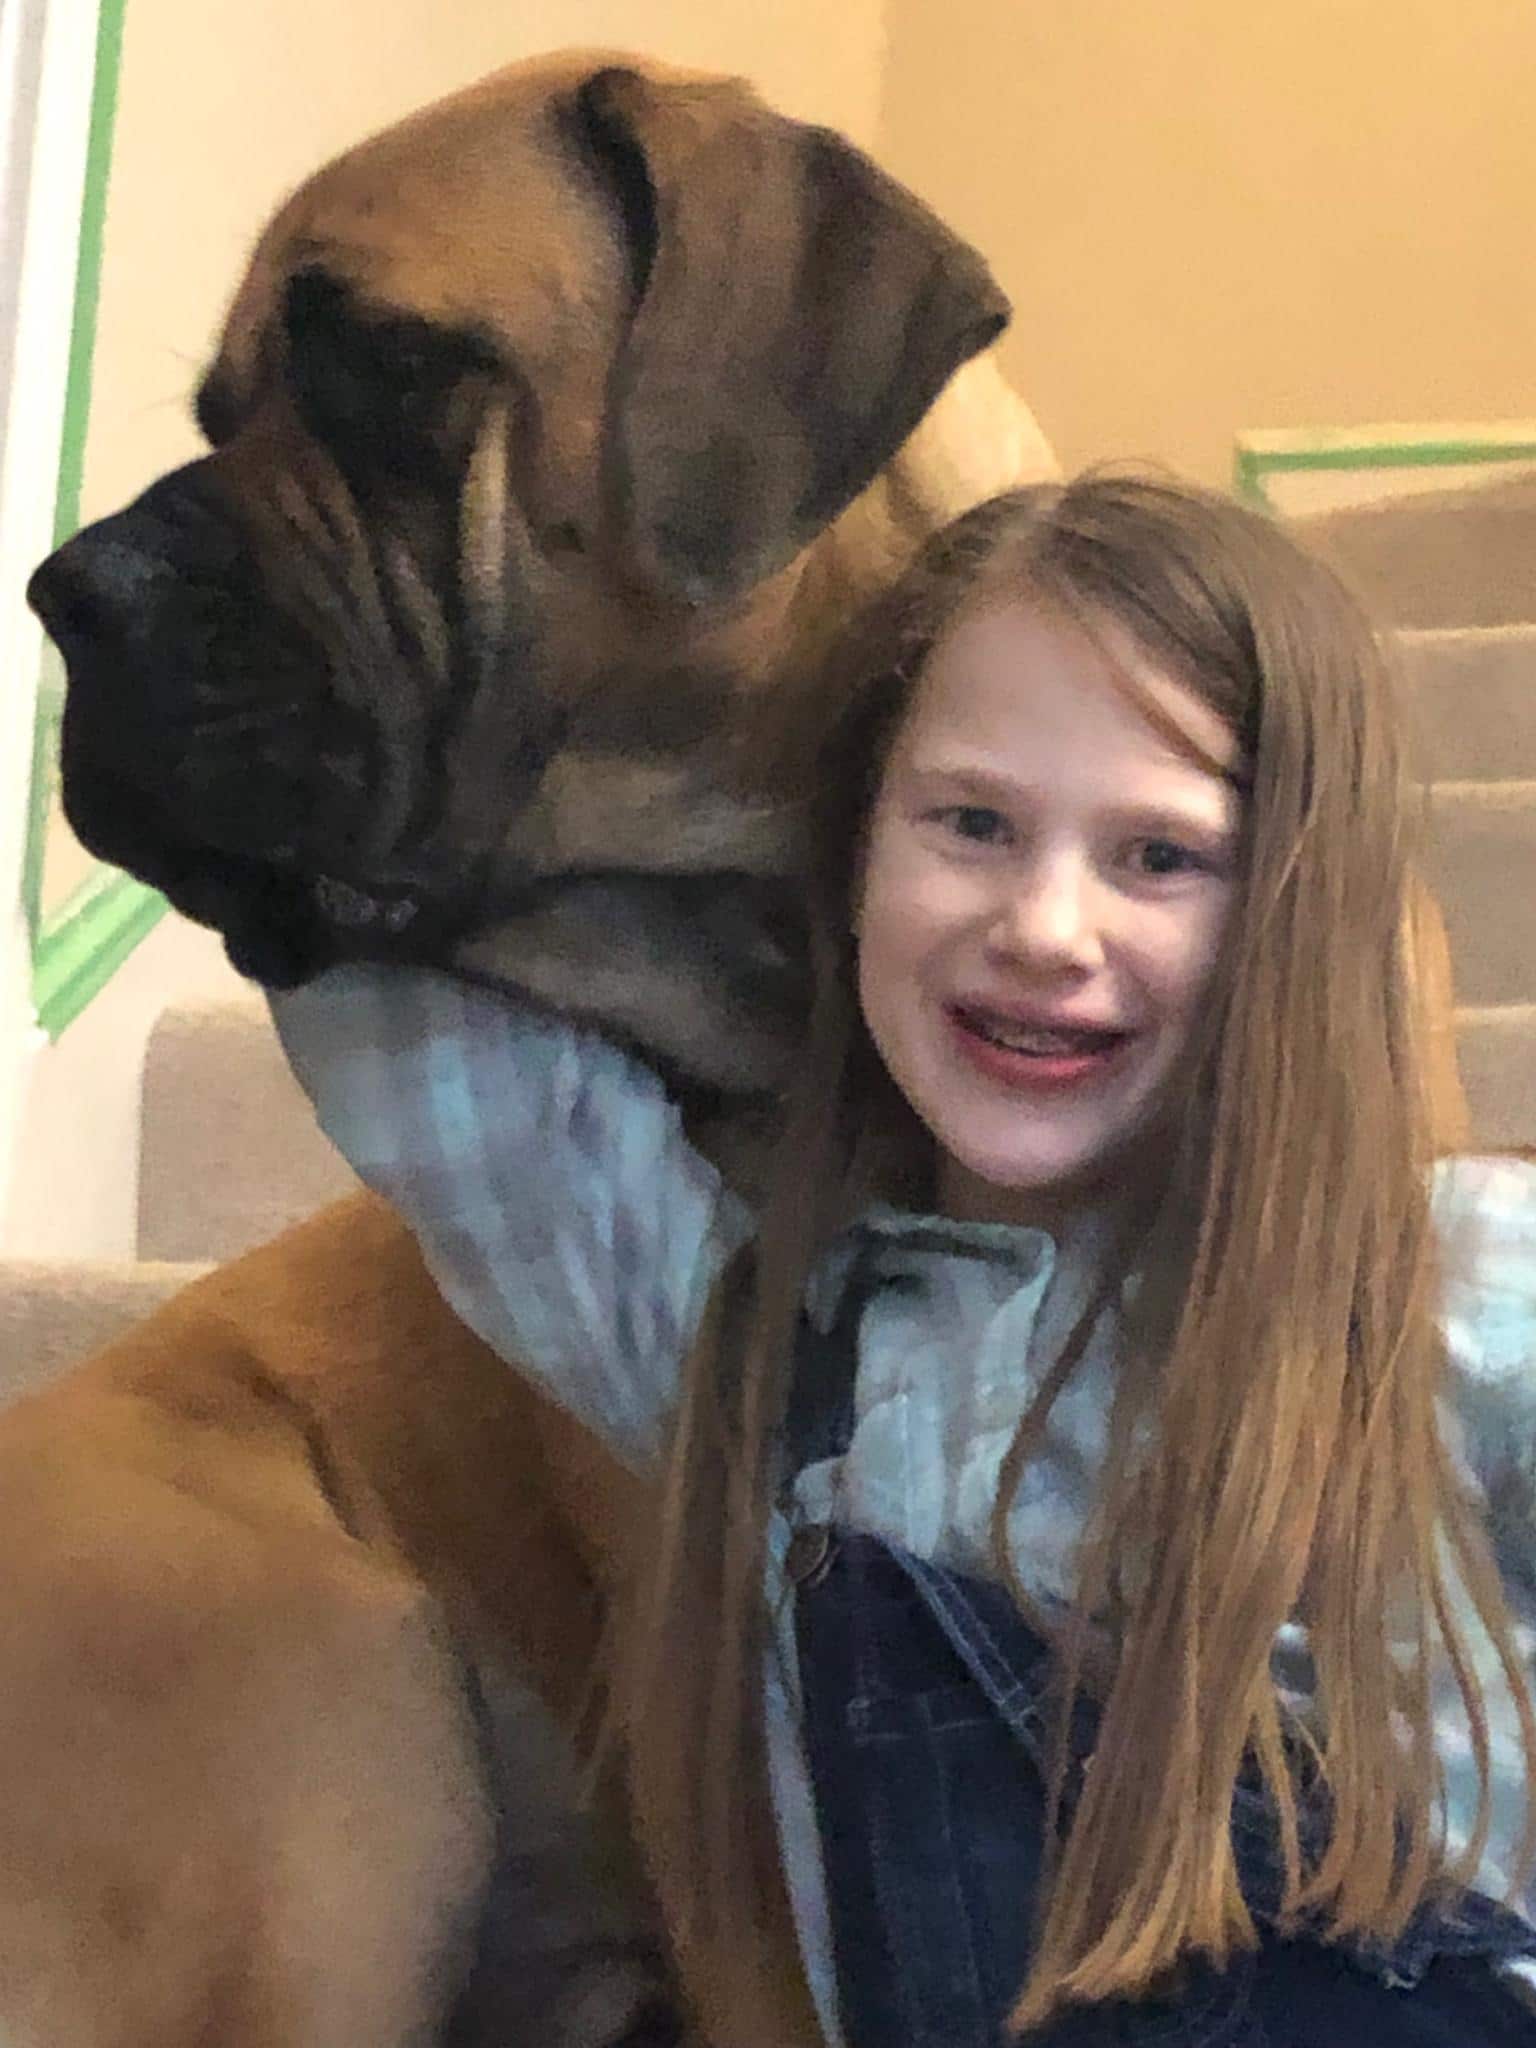 Small girl and massive Mastiff